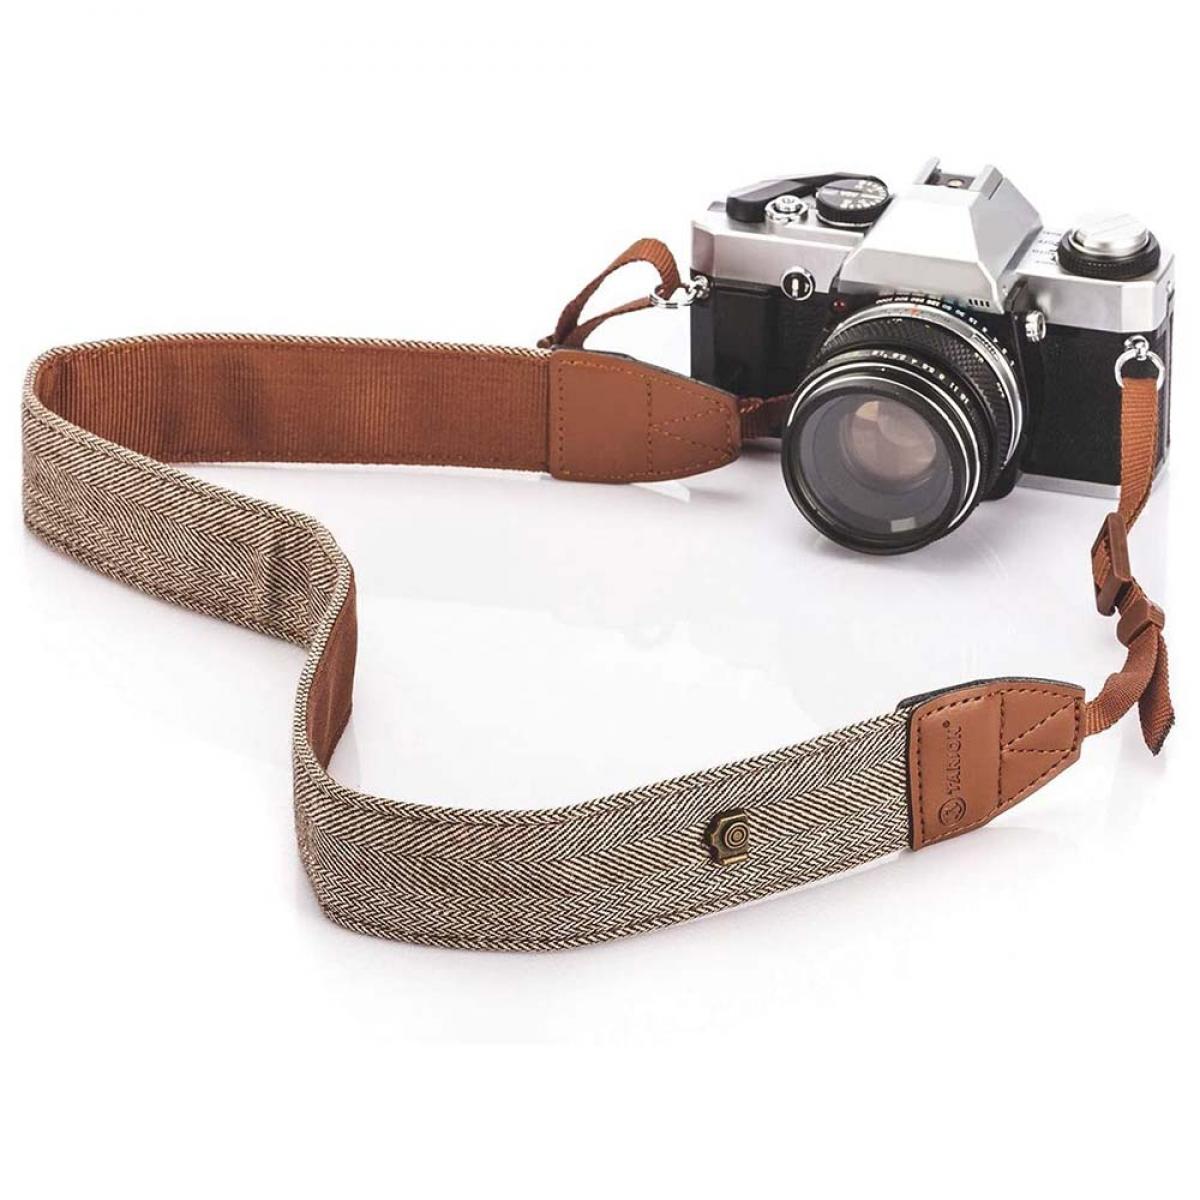 Heißer Verkauf Kamera Schulter Hals Vintage Gurt für Sony Nikon Canon KameraPDH 